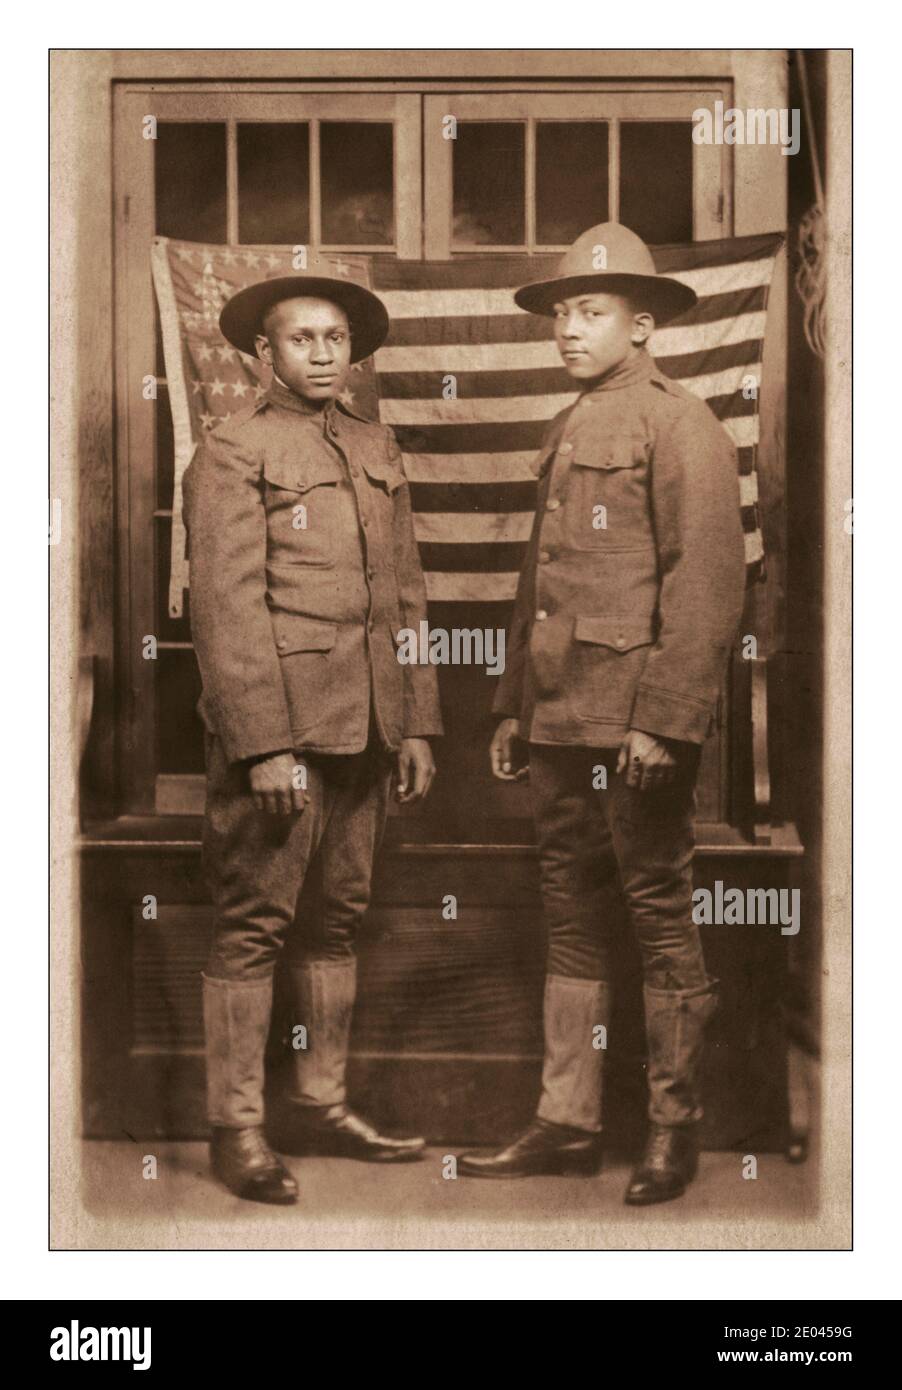 Propaganda de la primera Guerra Mundial Foto que muestra la contribución que los afroamericanos negros dieron a la primera Guerra Mundial.dos soldados afroamericanos no identificados en uniformes y sombreros de campaña de pie frente a la bandera estadounidense WW1 1918 [entre 1917 y 1918]. Estados Unidos.--Ejército--Pueblo--1910-1920 Guerra Mundial, 1914-1918--personal militar--afroamericanos americanos--Servicio militar--1910-1920 - soldados--americanos--1910-1920 uniformes militares--americanos--1910-1920 banderas--americanos--1910-1920 retratos de grupos--1910-1920. Postales fotográficas--1910-1920. Copias fotográficas--1910-1920. Retratos Foto de stock